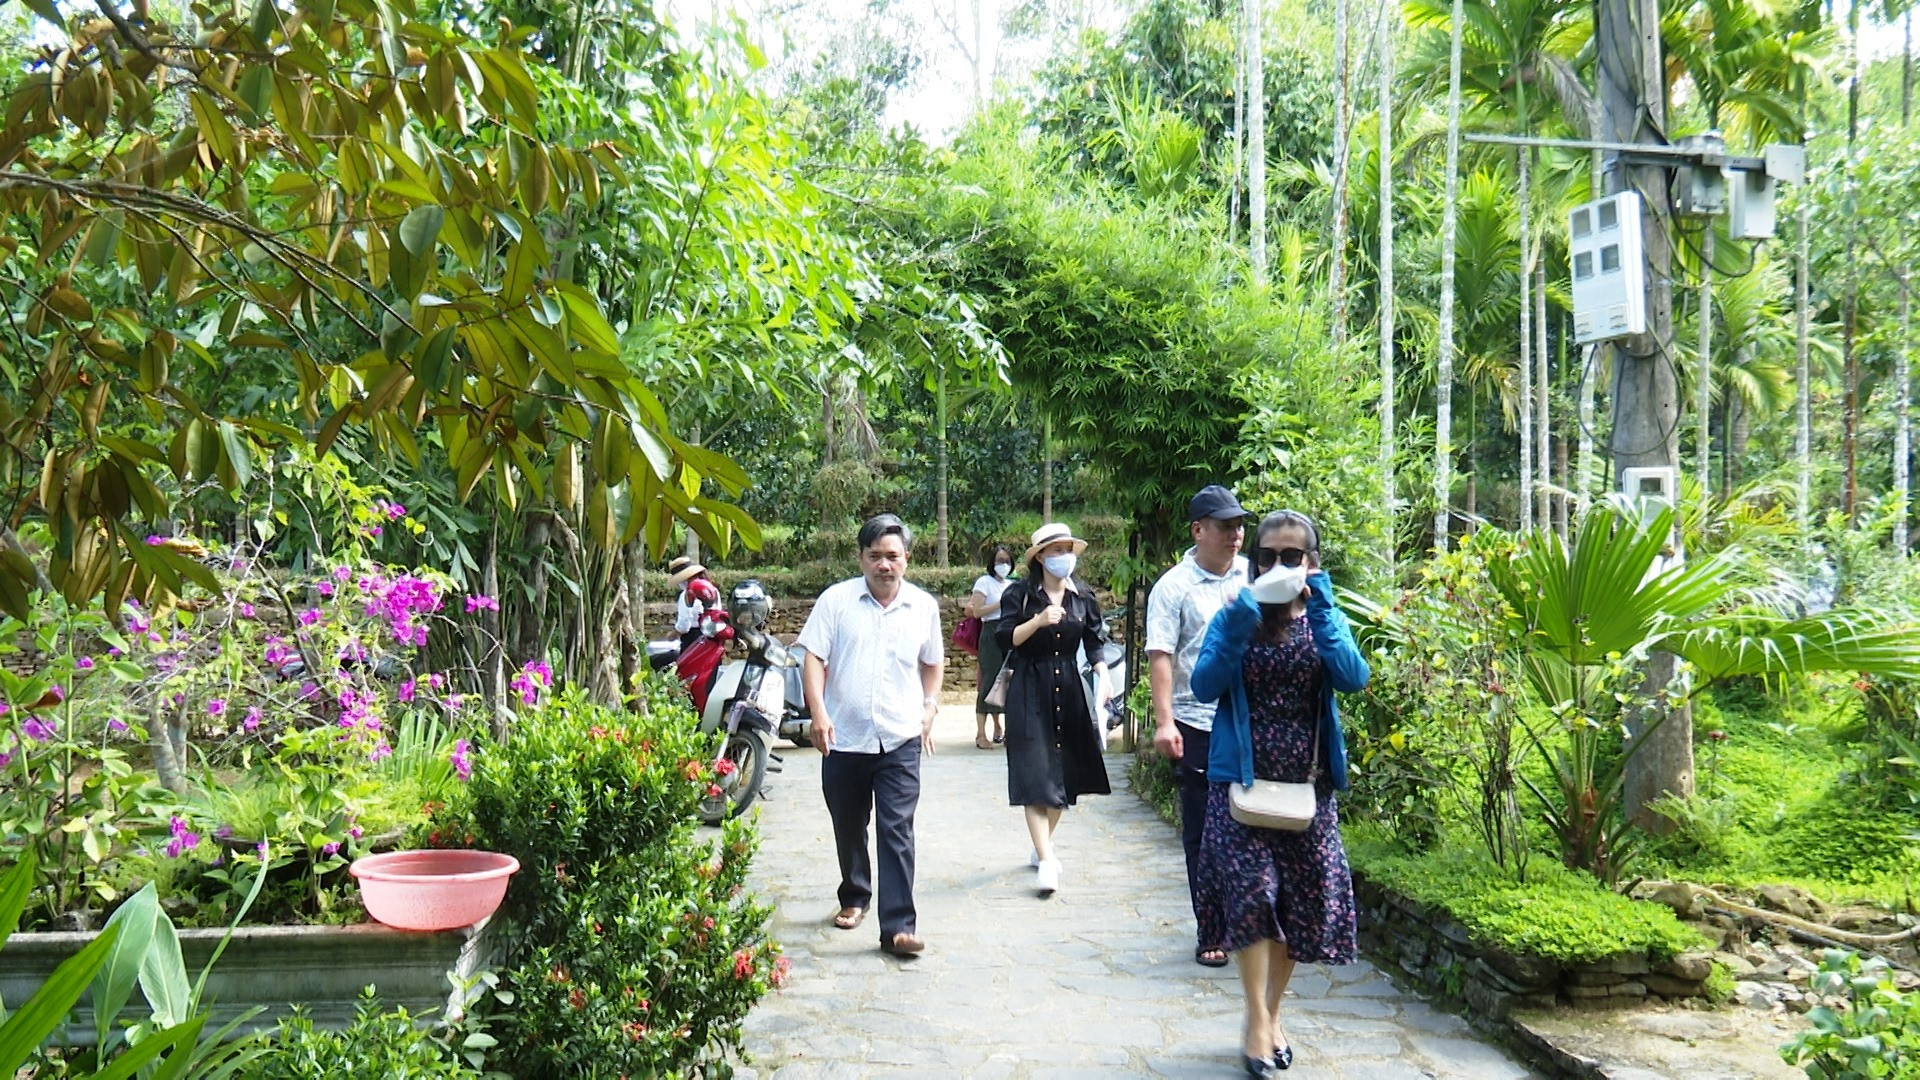 Đoàn đi khảo sát thực tế các điểm du lịch xanh tại làng cổ Lộc Yên. Ảnh: N.HƯNG